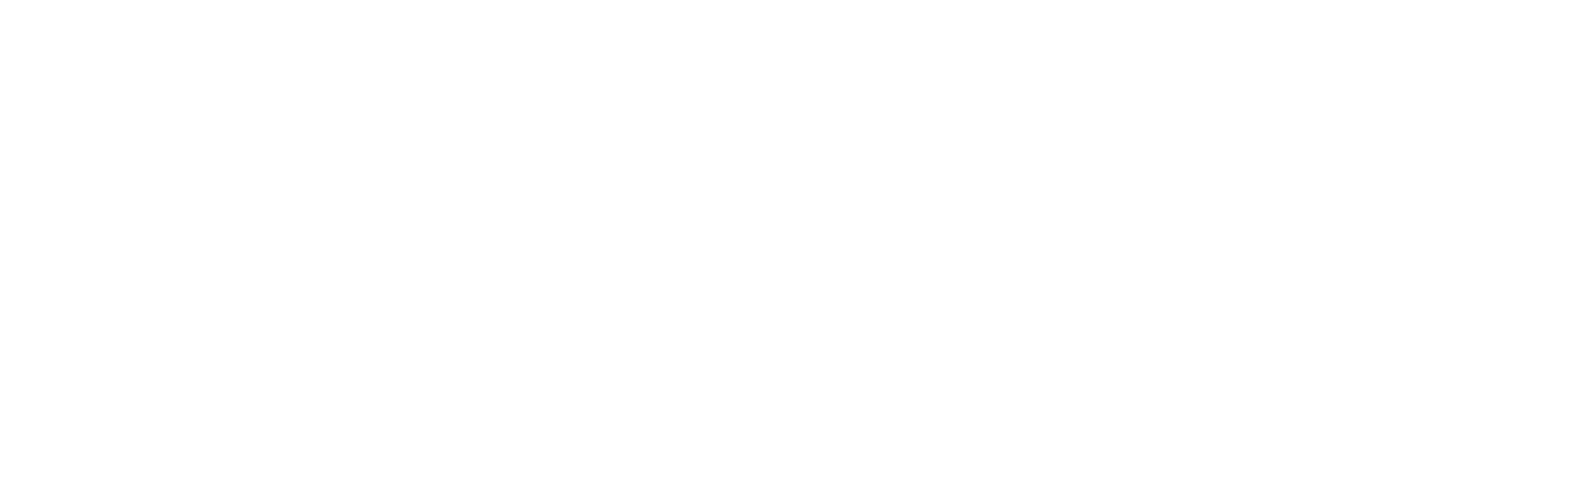 Mullen Automotive logo grand pour les fonds sombres (PNG transparent)